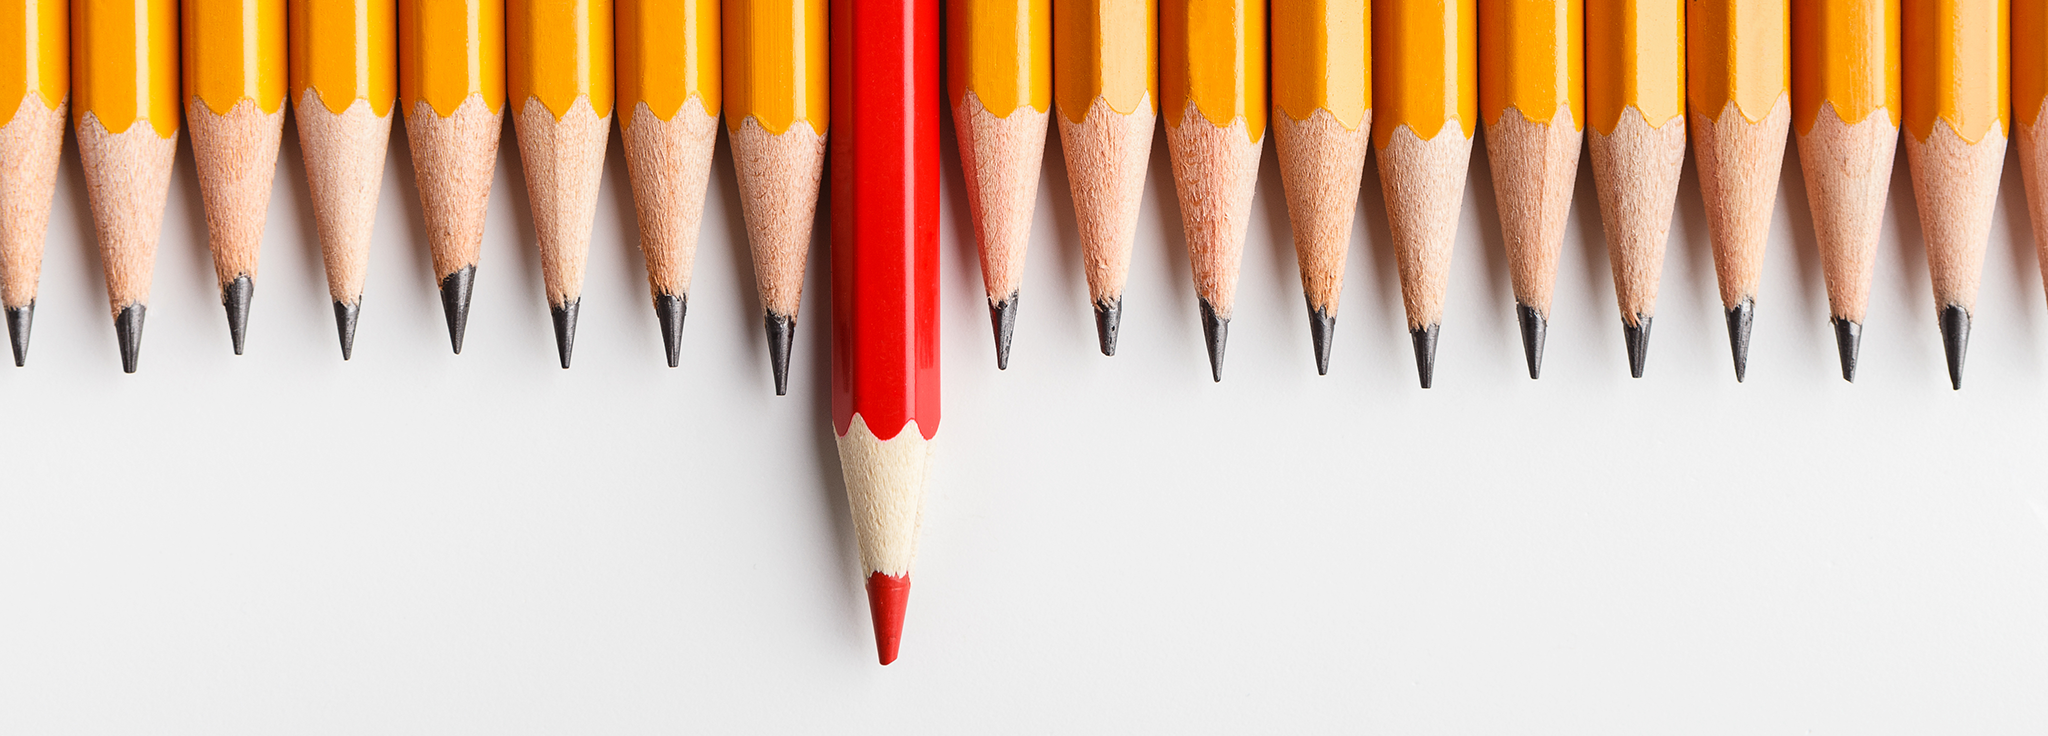 Mehrere Bleistifte in einer Reihe ein roter Buntstift herausragend außergewöhnlich